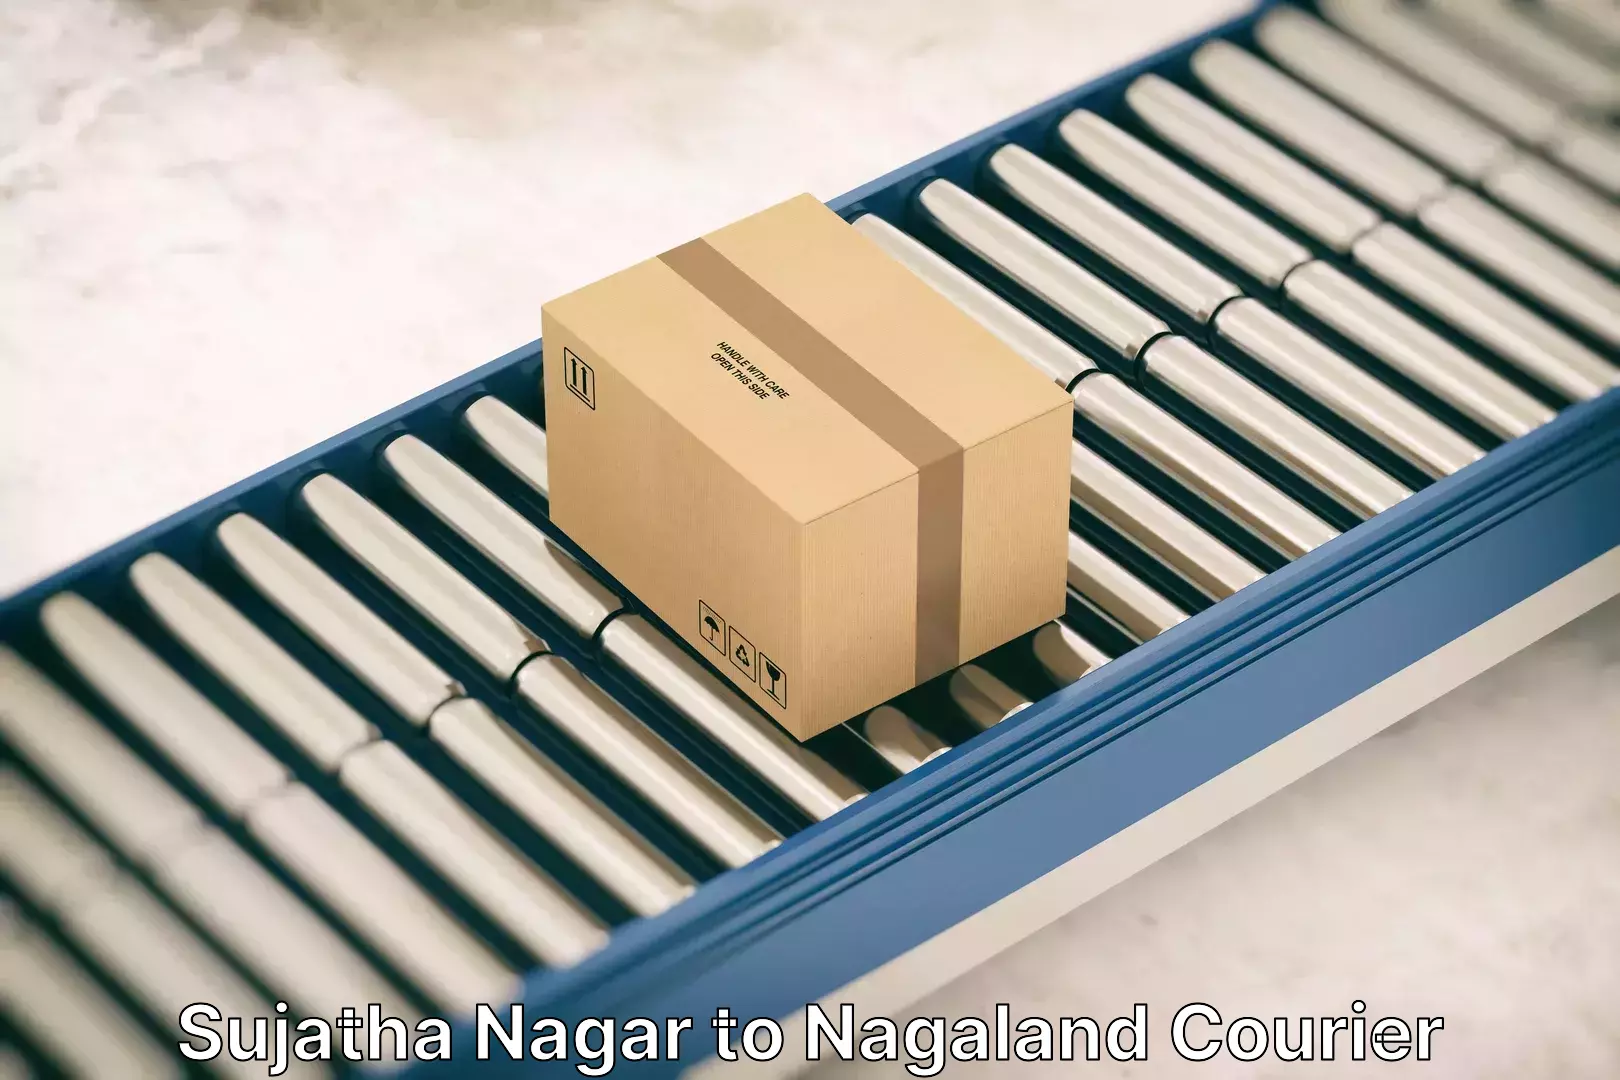 Efficient moving company Sujatha Nagar to Nagaland